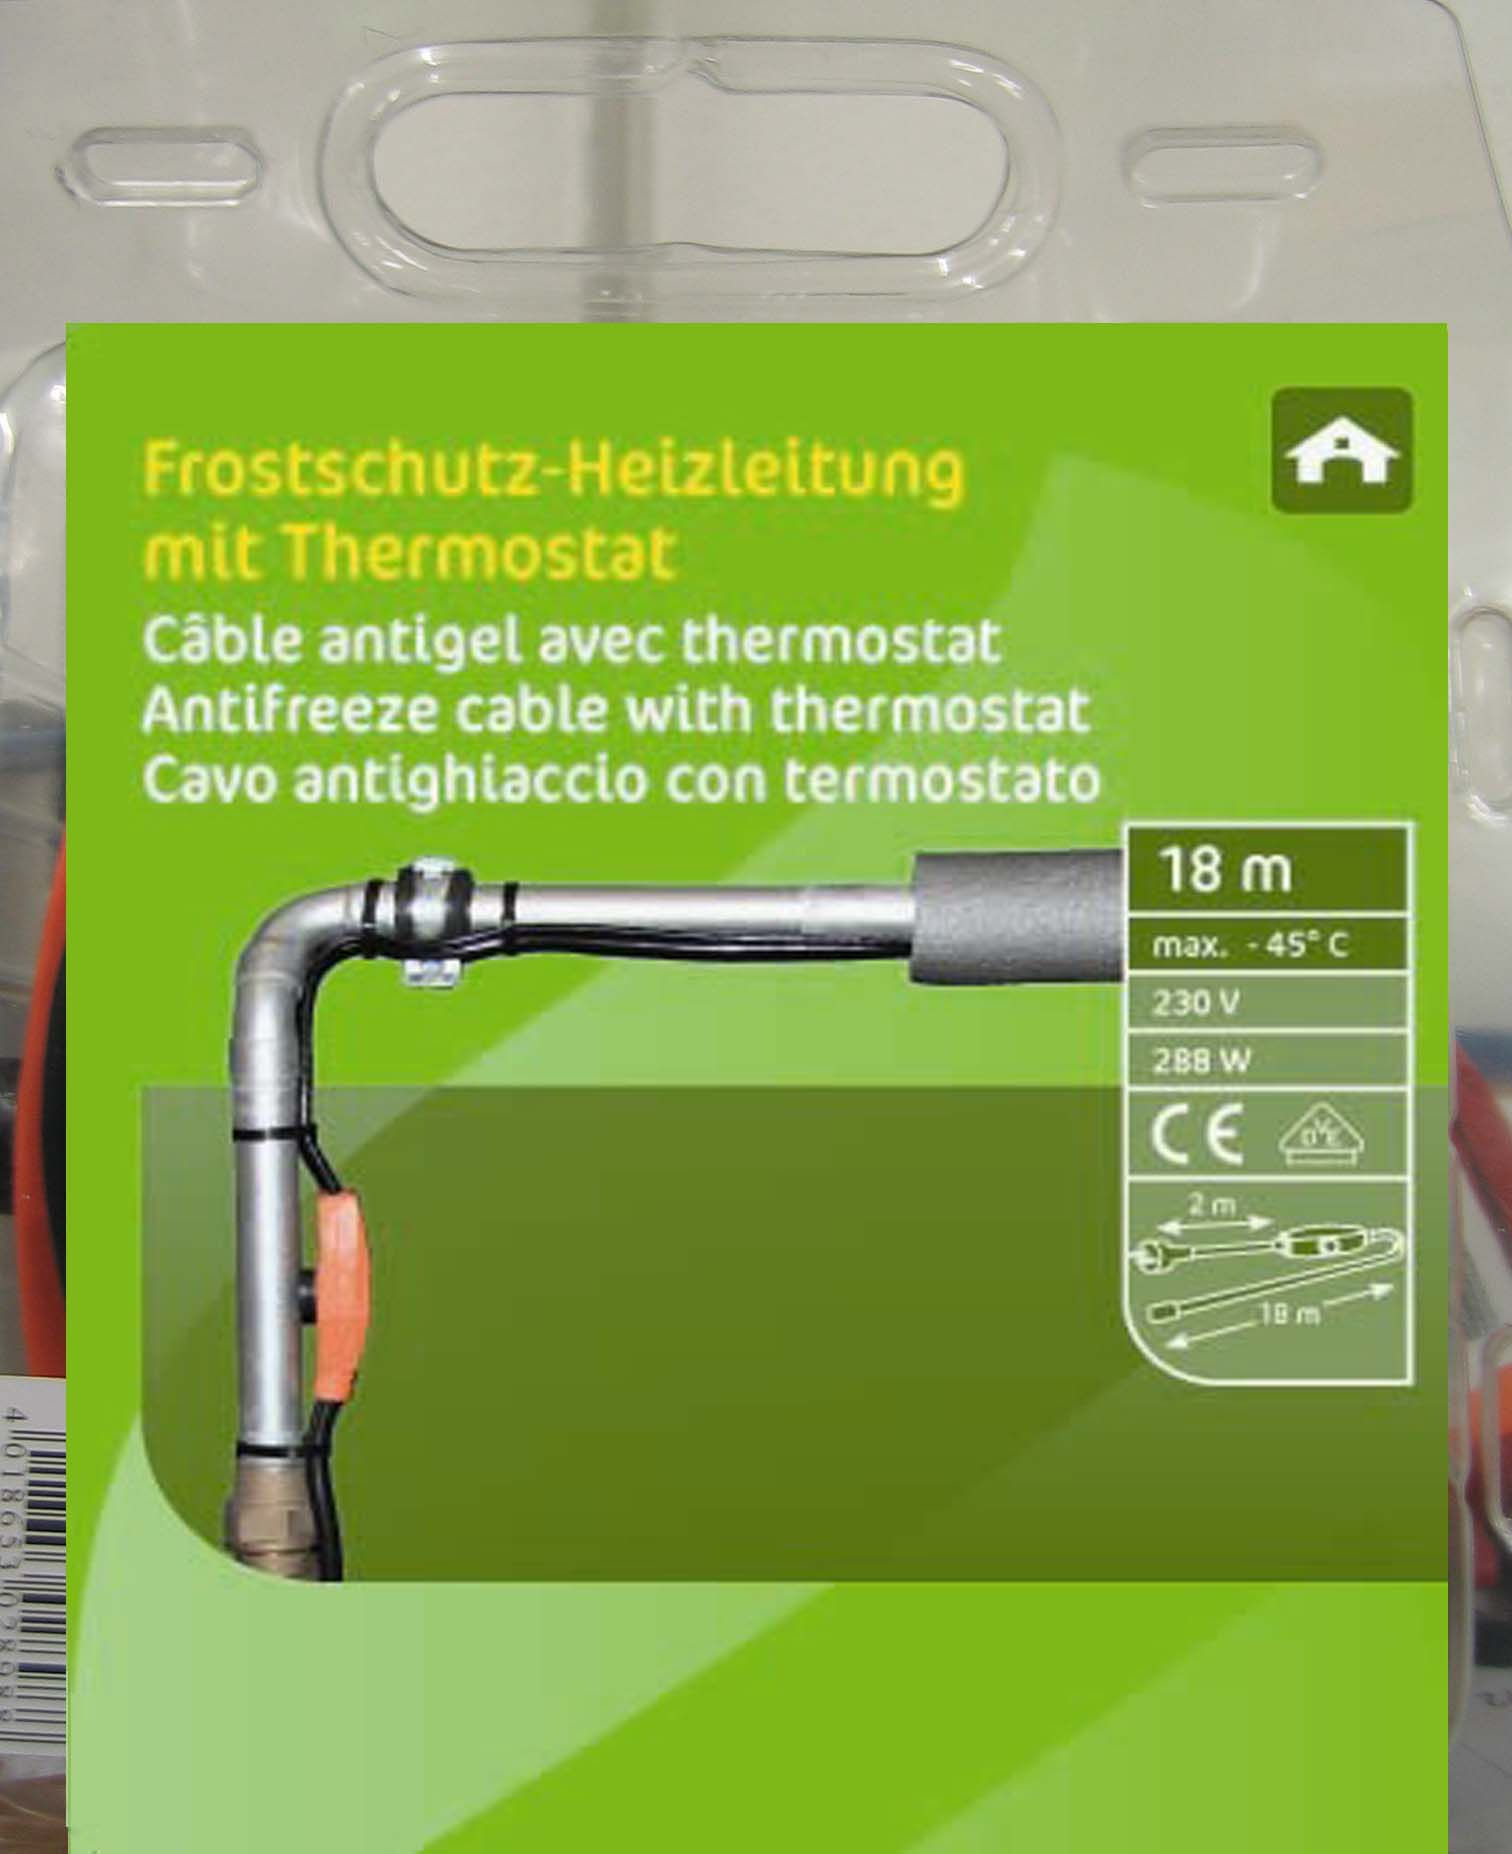 Frostschutz-Heizleitung 18m mit Thermostat